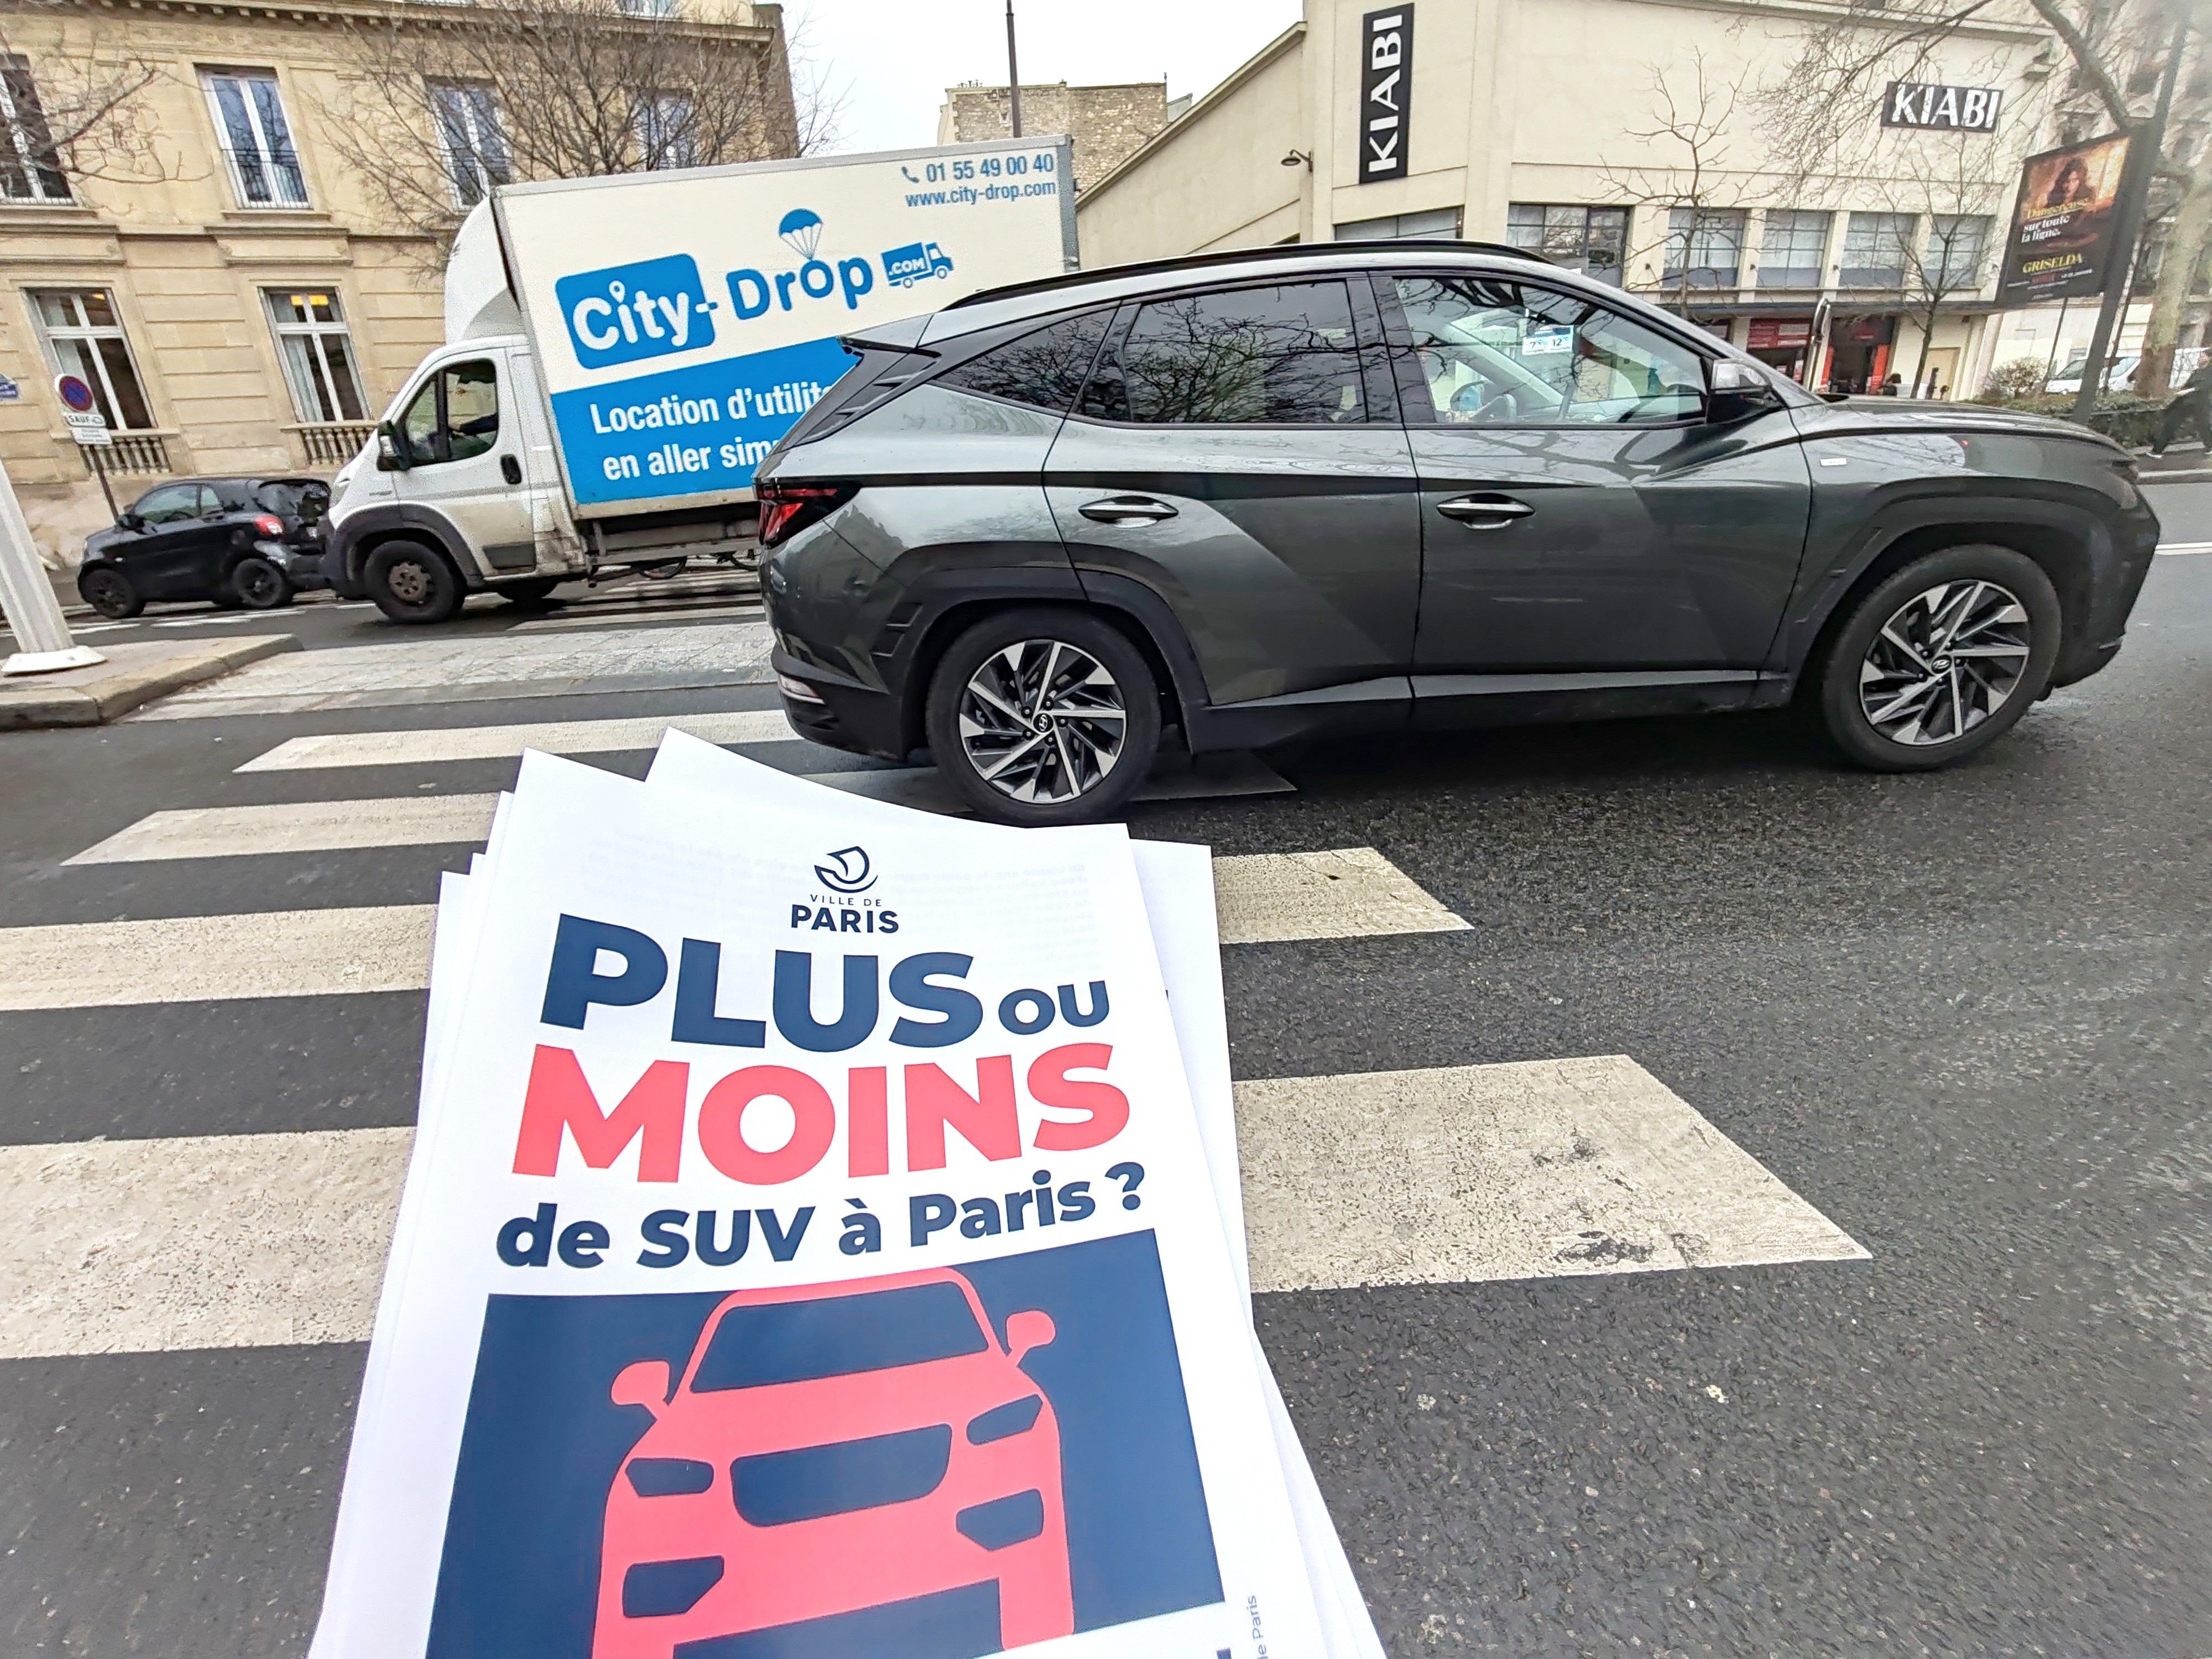 La Ville de Paris organise le 4 février une votation sur la place des SUV «les plus lourds, encombrants et polluants» dans la capitale, et notamment sur un tarif spécial de stationnement pour ces véhicules. LP/Alexis Bisson